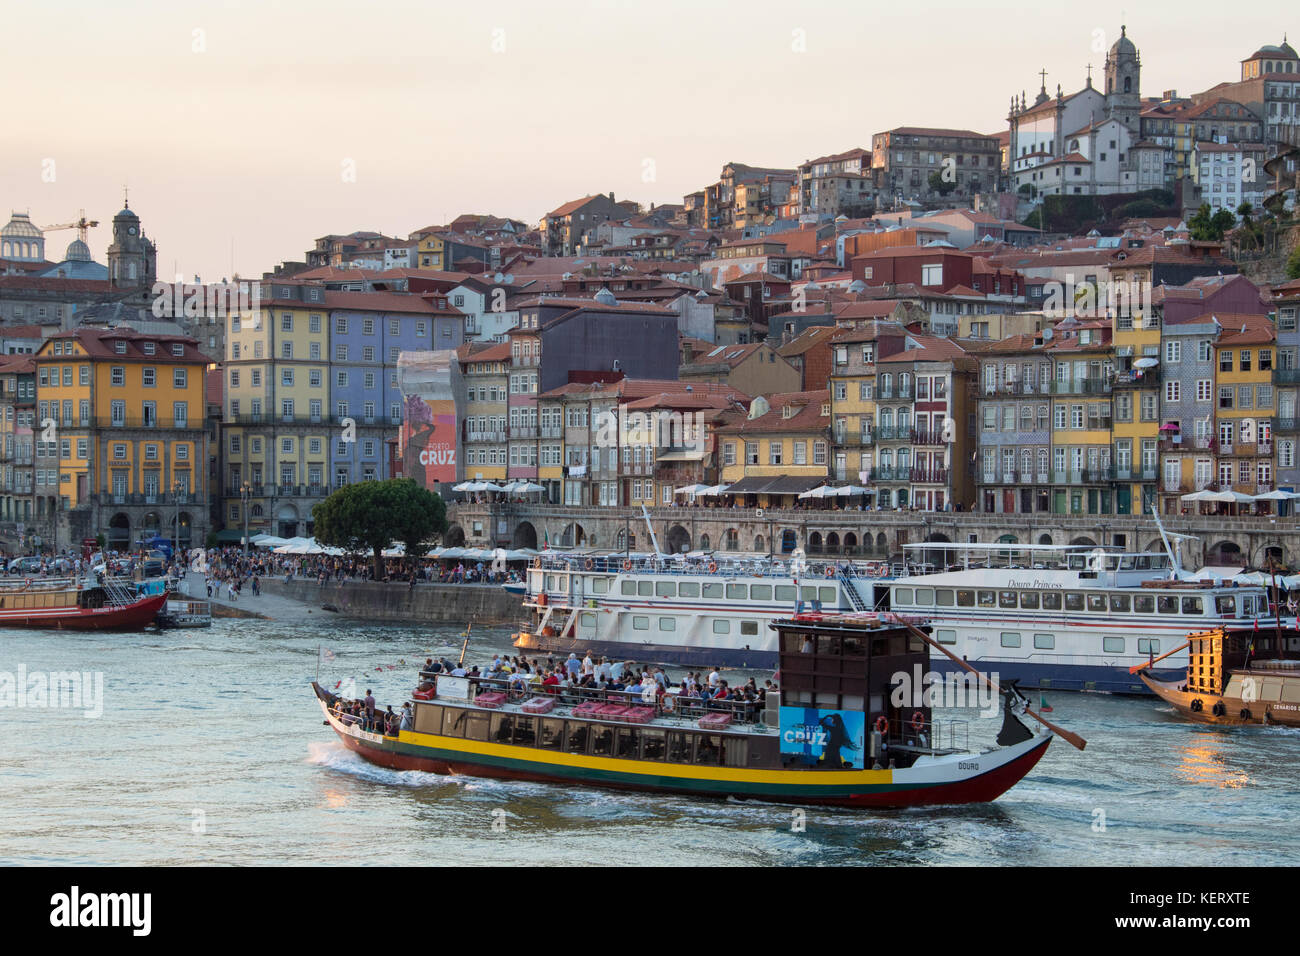 Tourist boat, Douro riverfront, Porto, Portugal Stock Photo